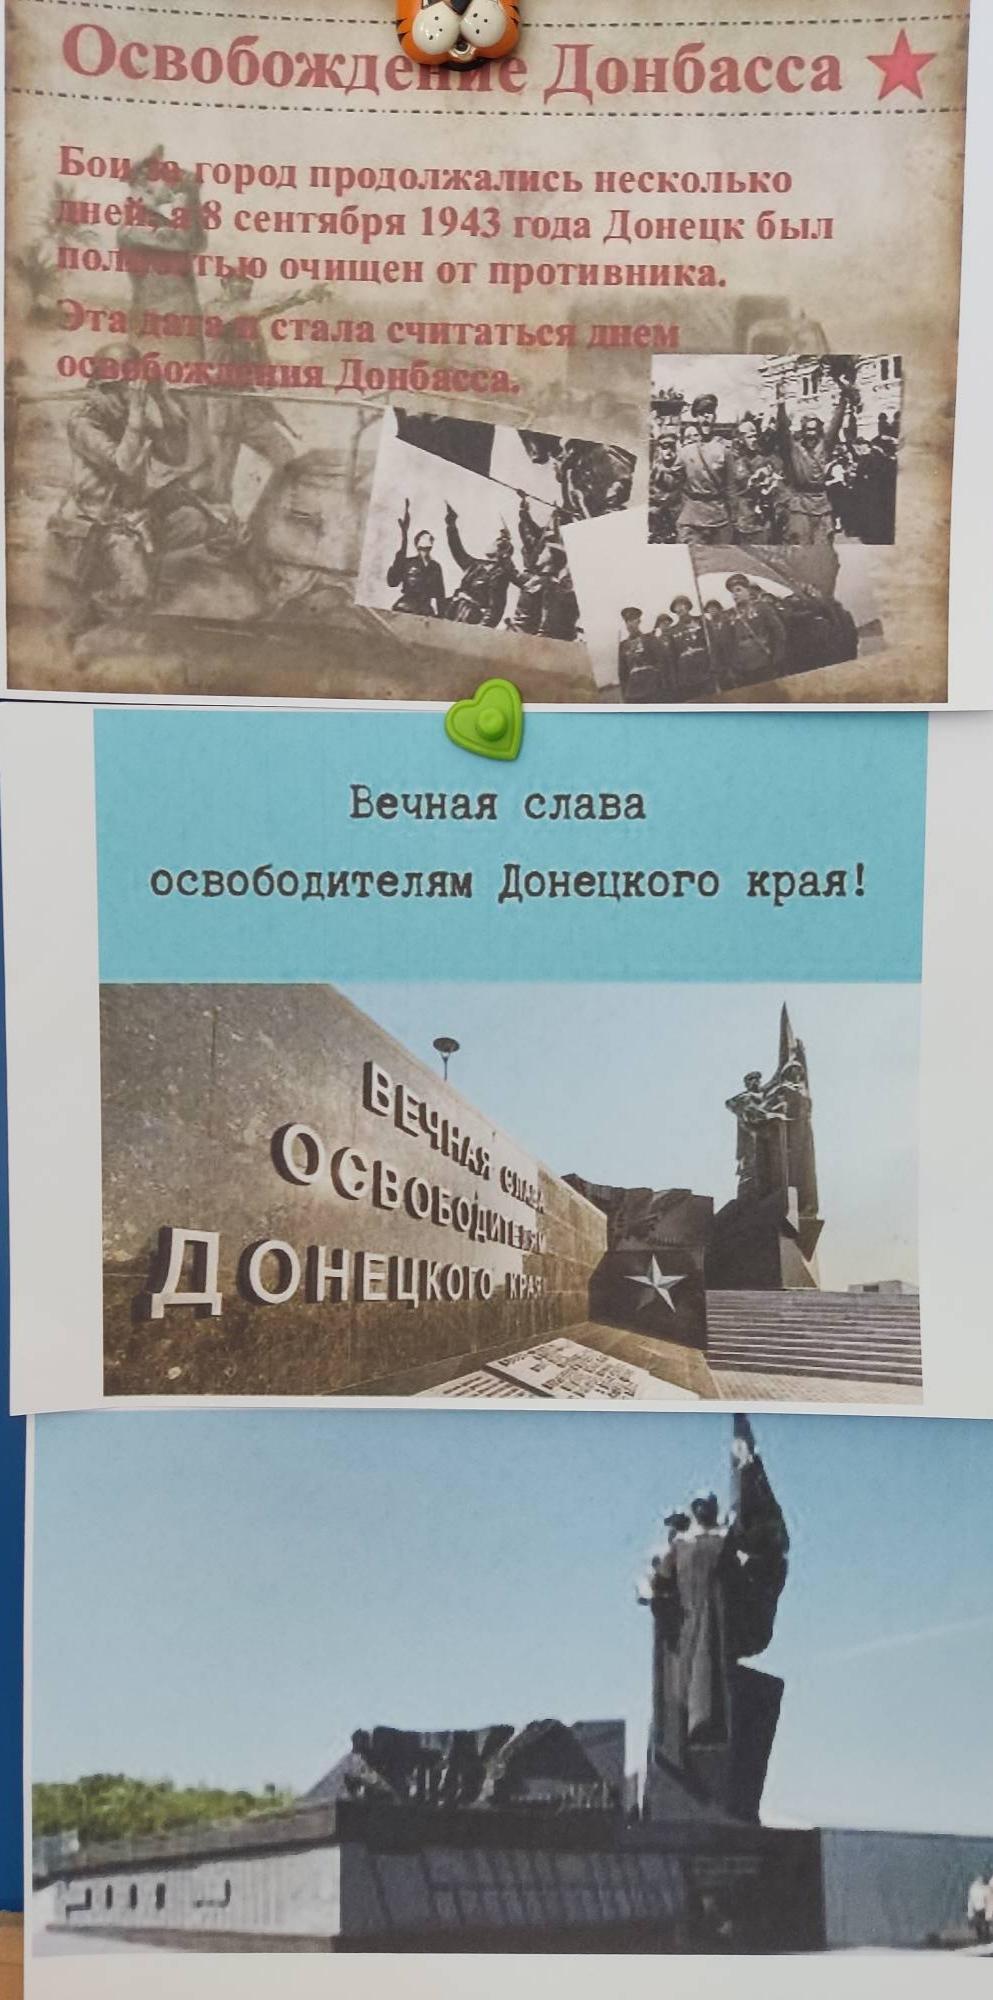 С днем освобождения Донбасса открытка